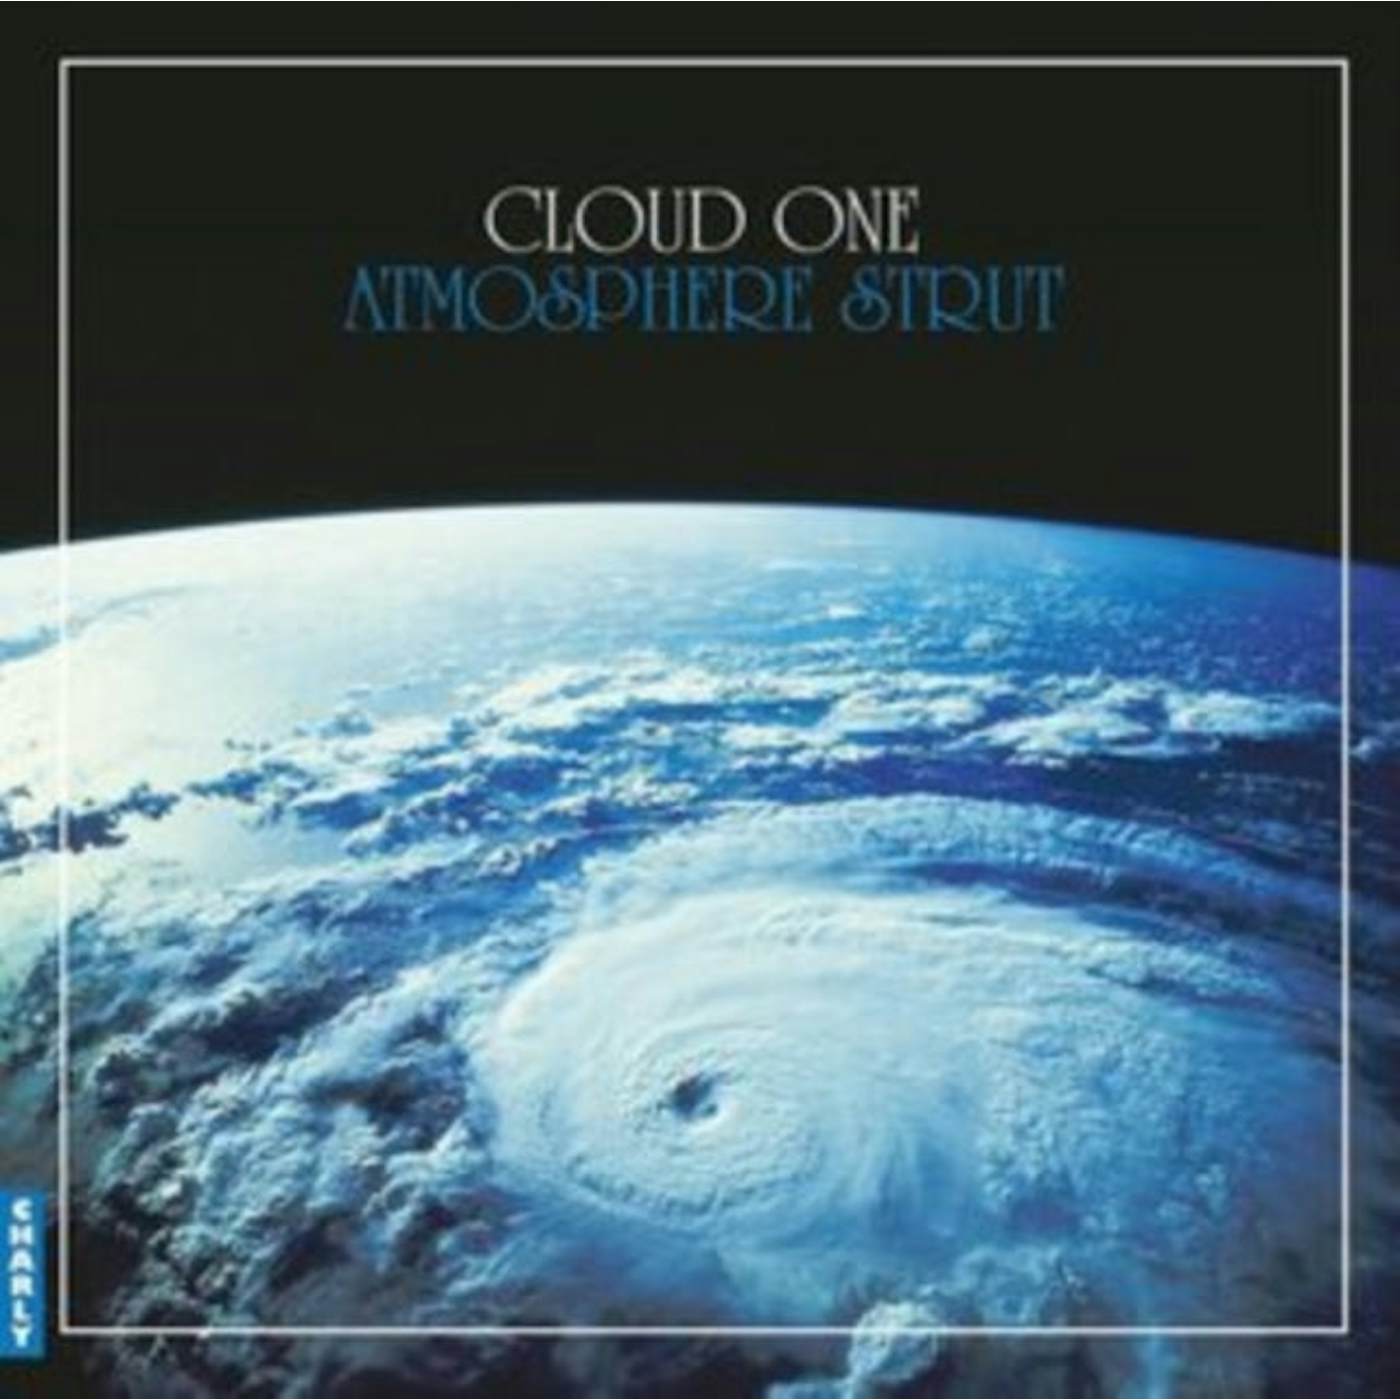 Cloud One LP - Atmosphere Strut (Vinyl)